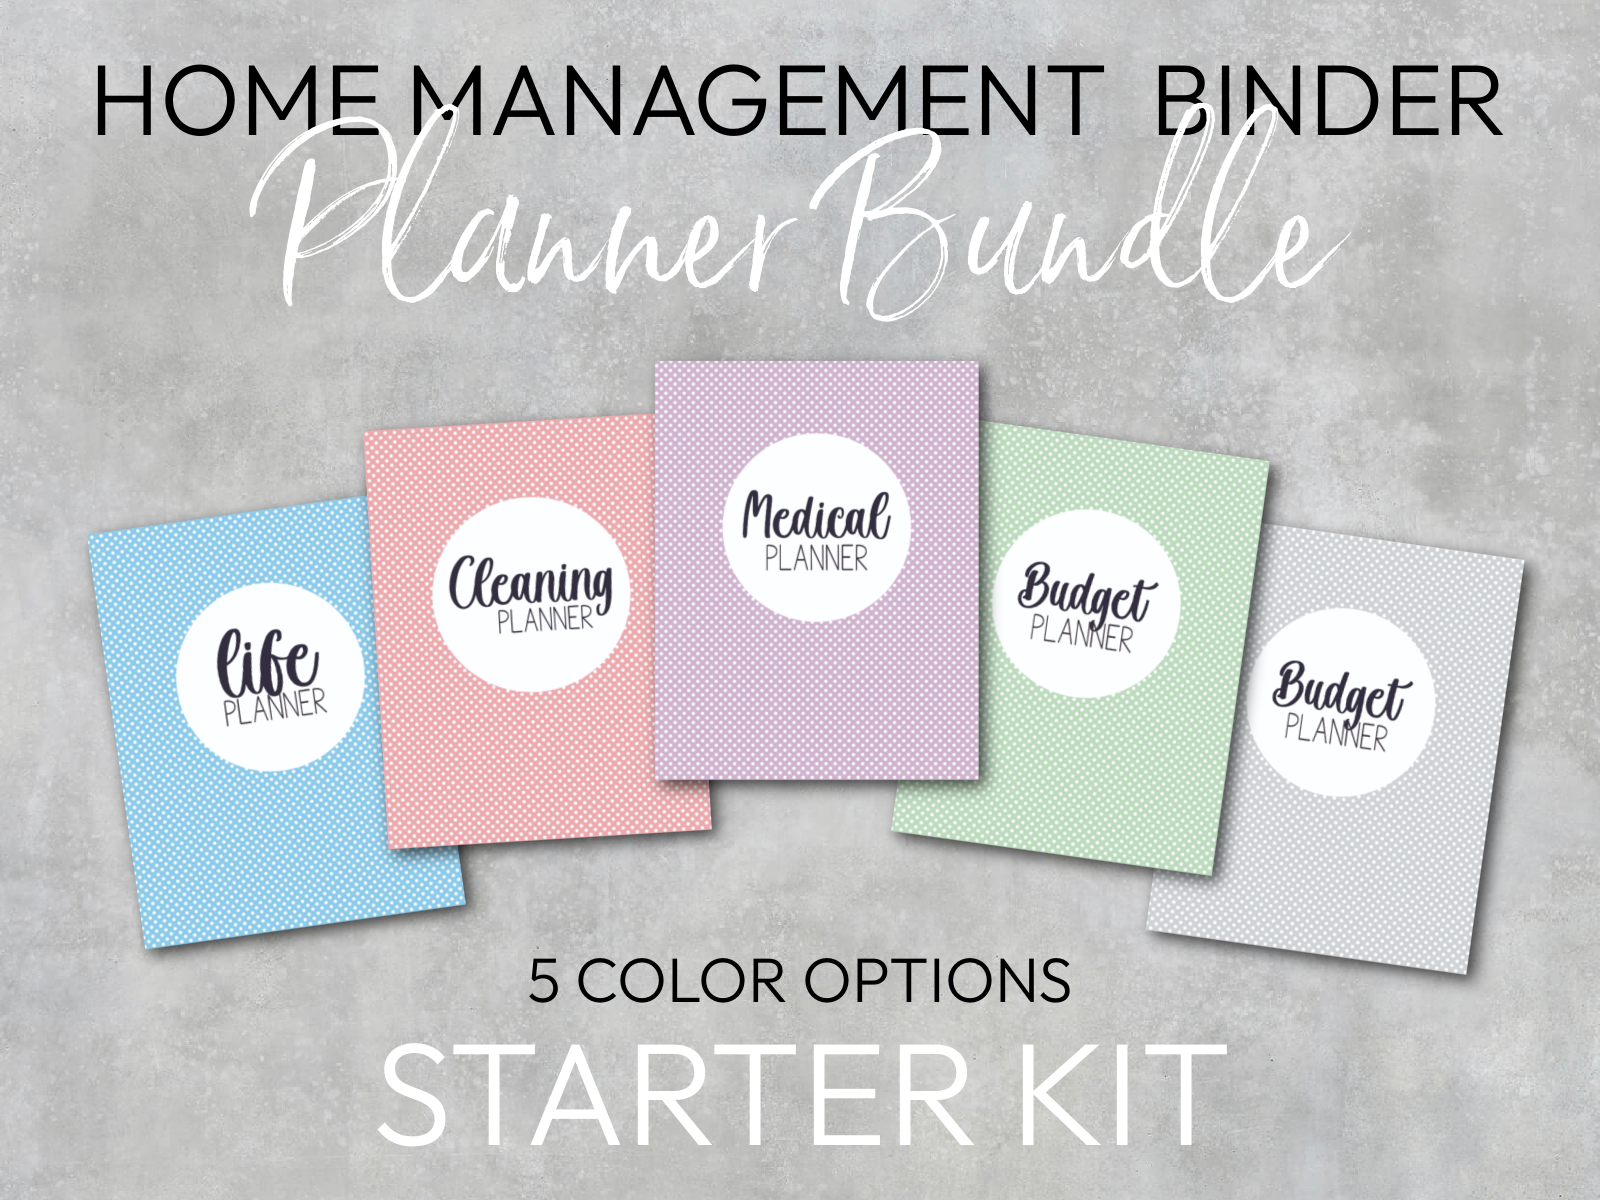 Home Management Binder Planner Bundle